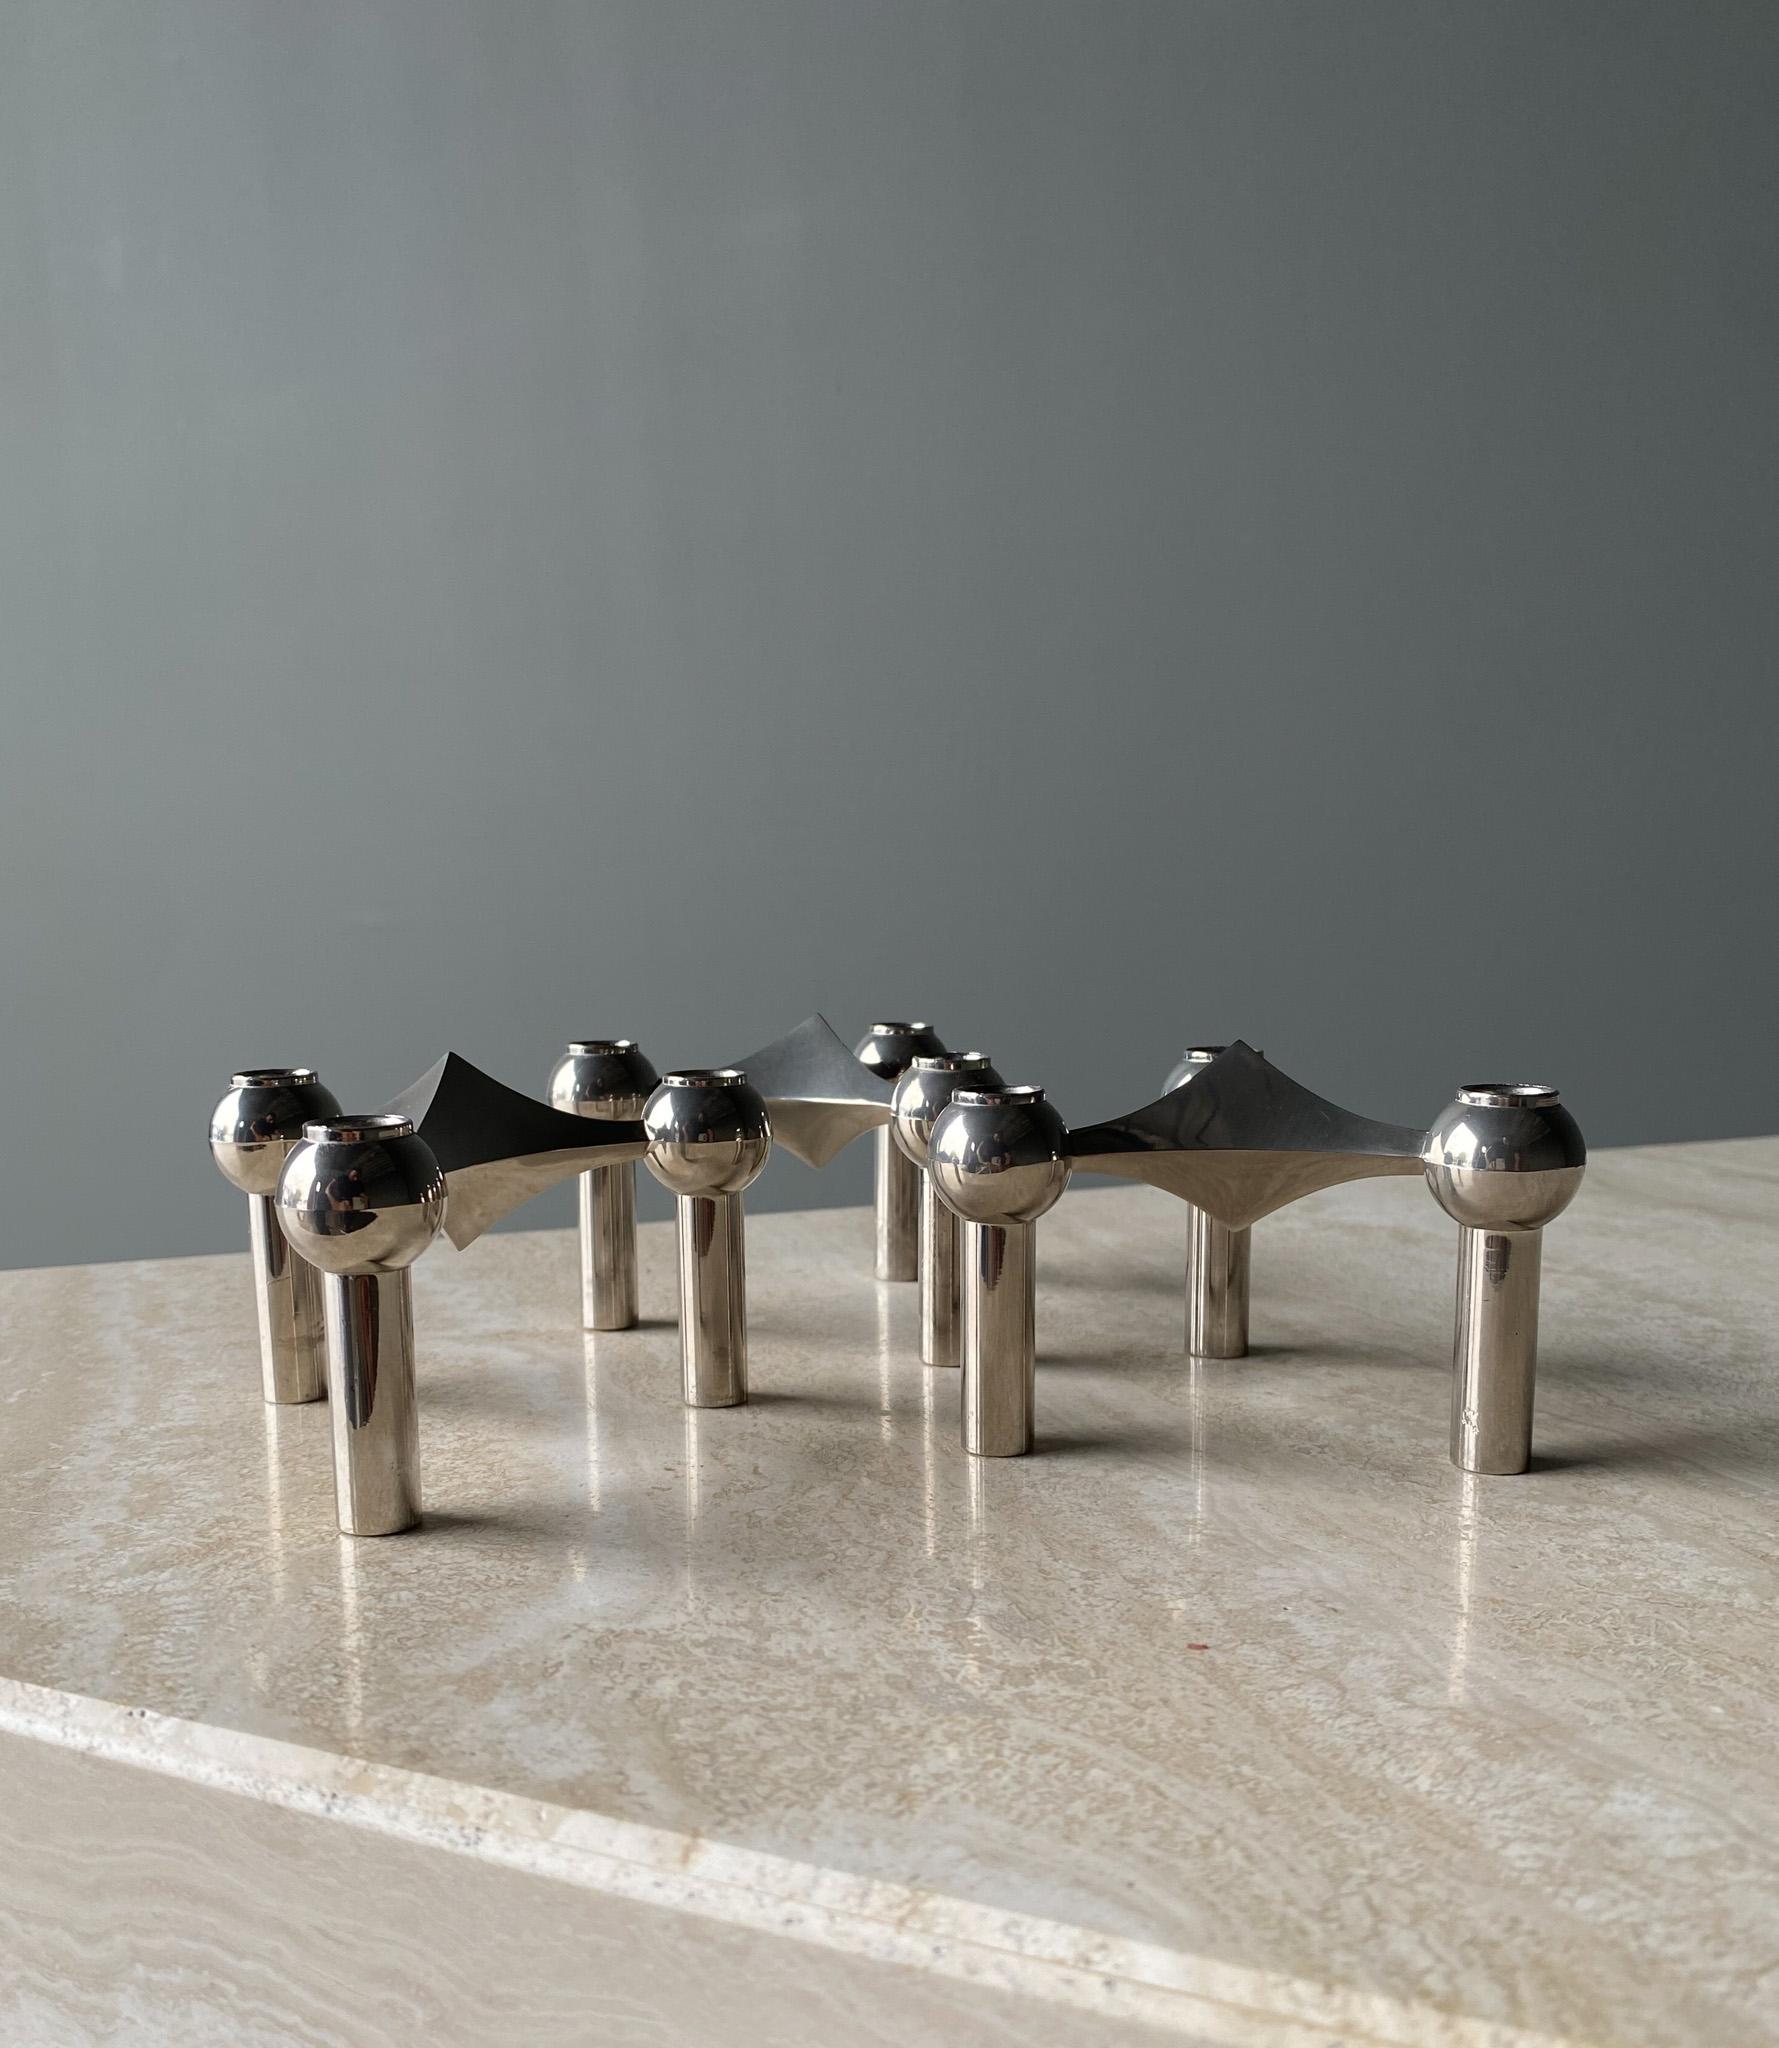 Steel Stoff Nagel Candleholder Designed by Werner Stoff for Metalworker Hans Nagel